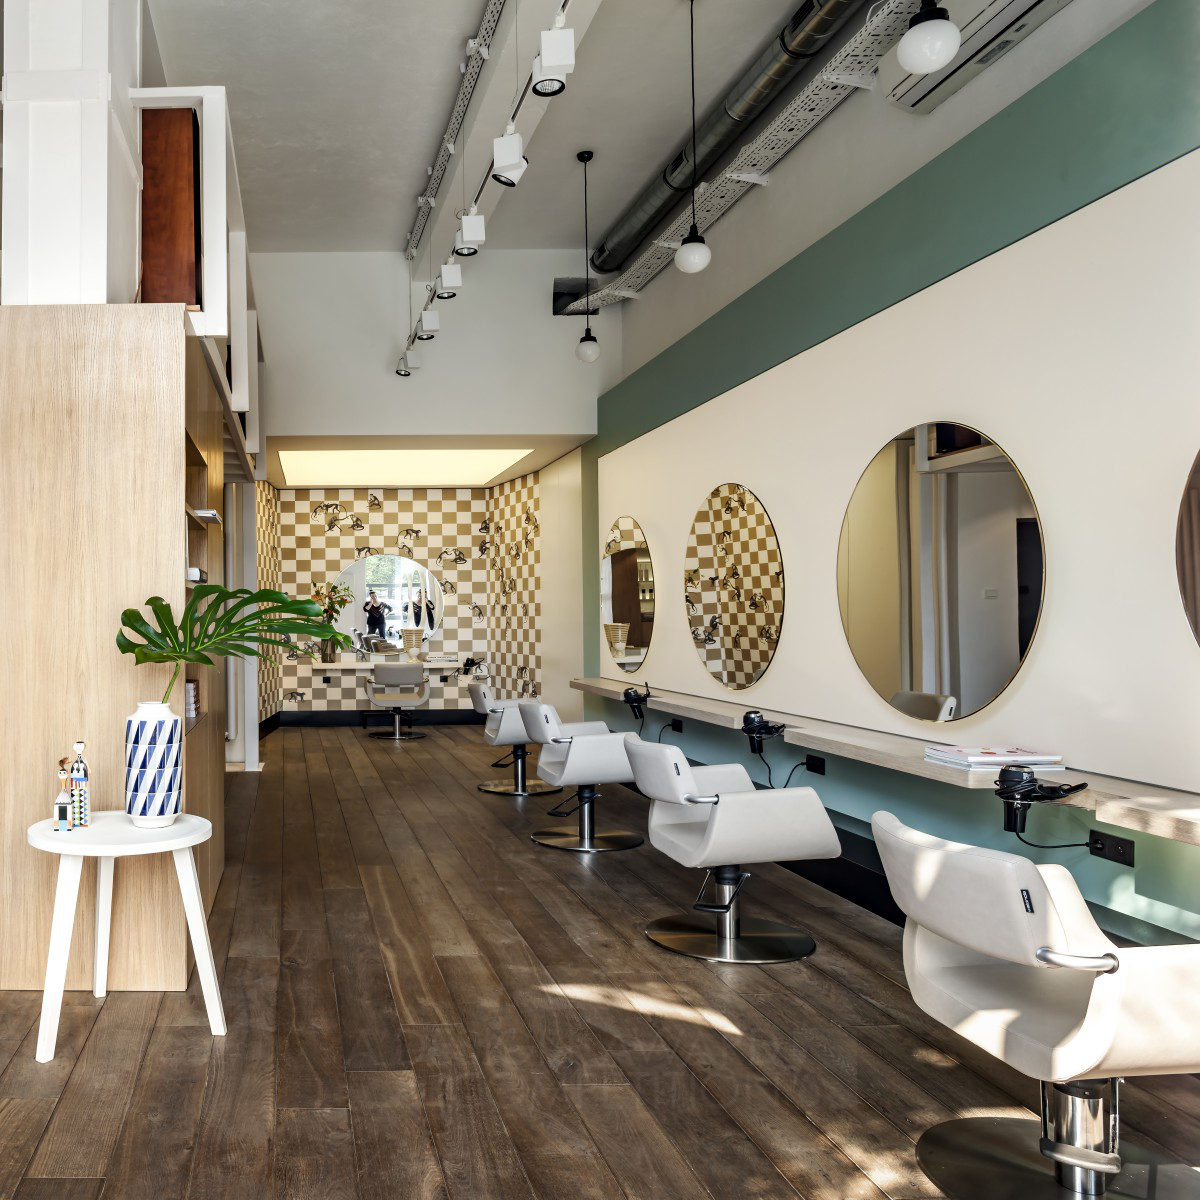 Designer's Cut Hair Salon by Mood Works - Karina Snuszka & Dorota Kuc